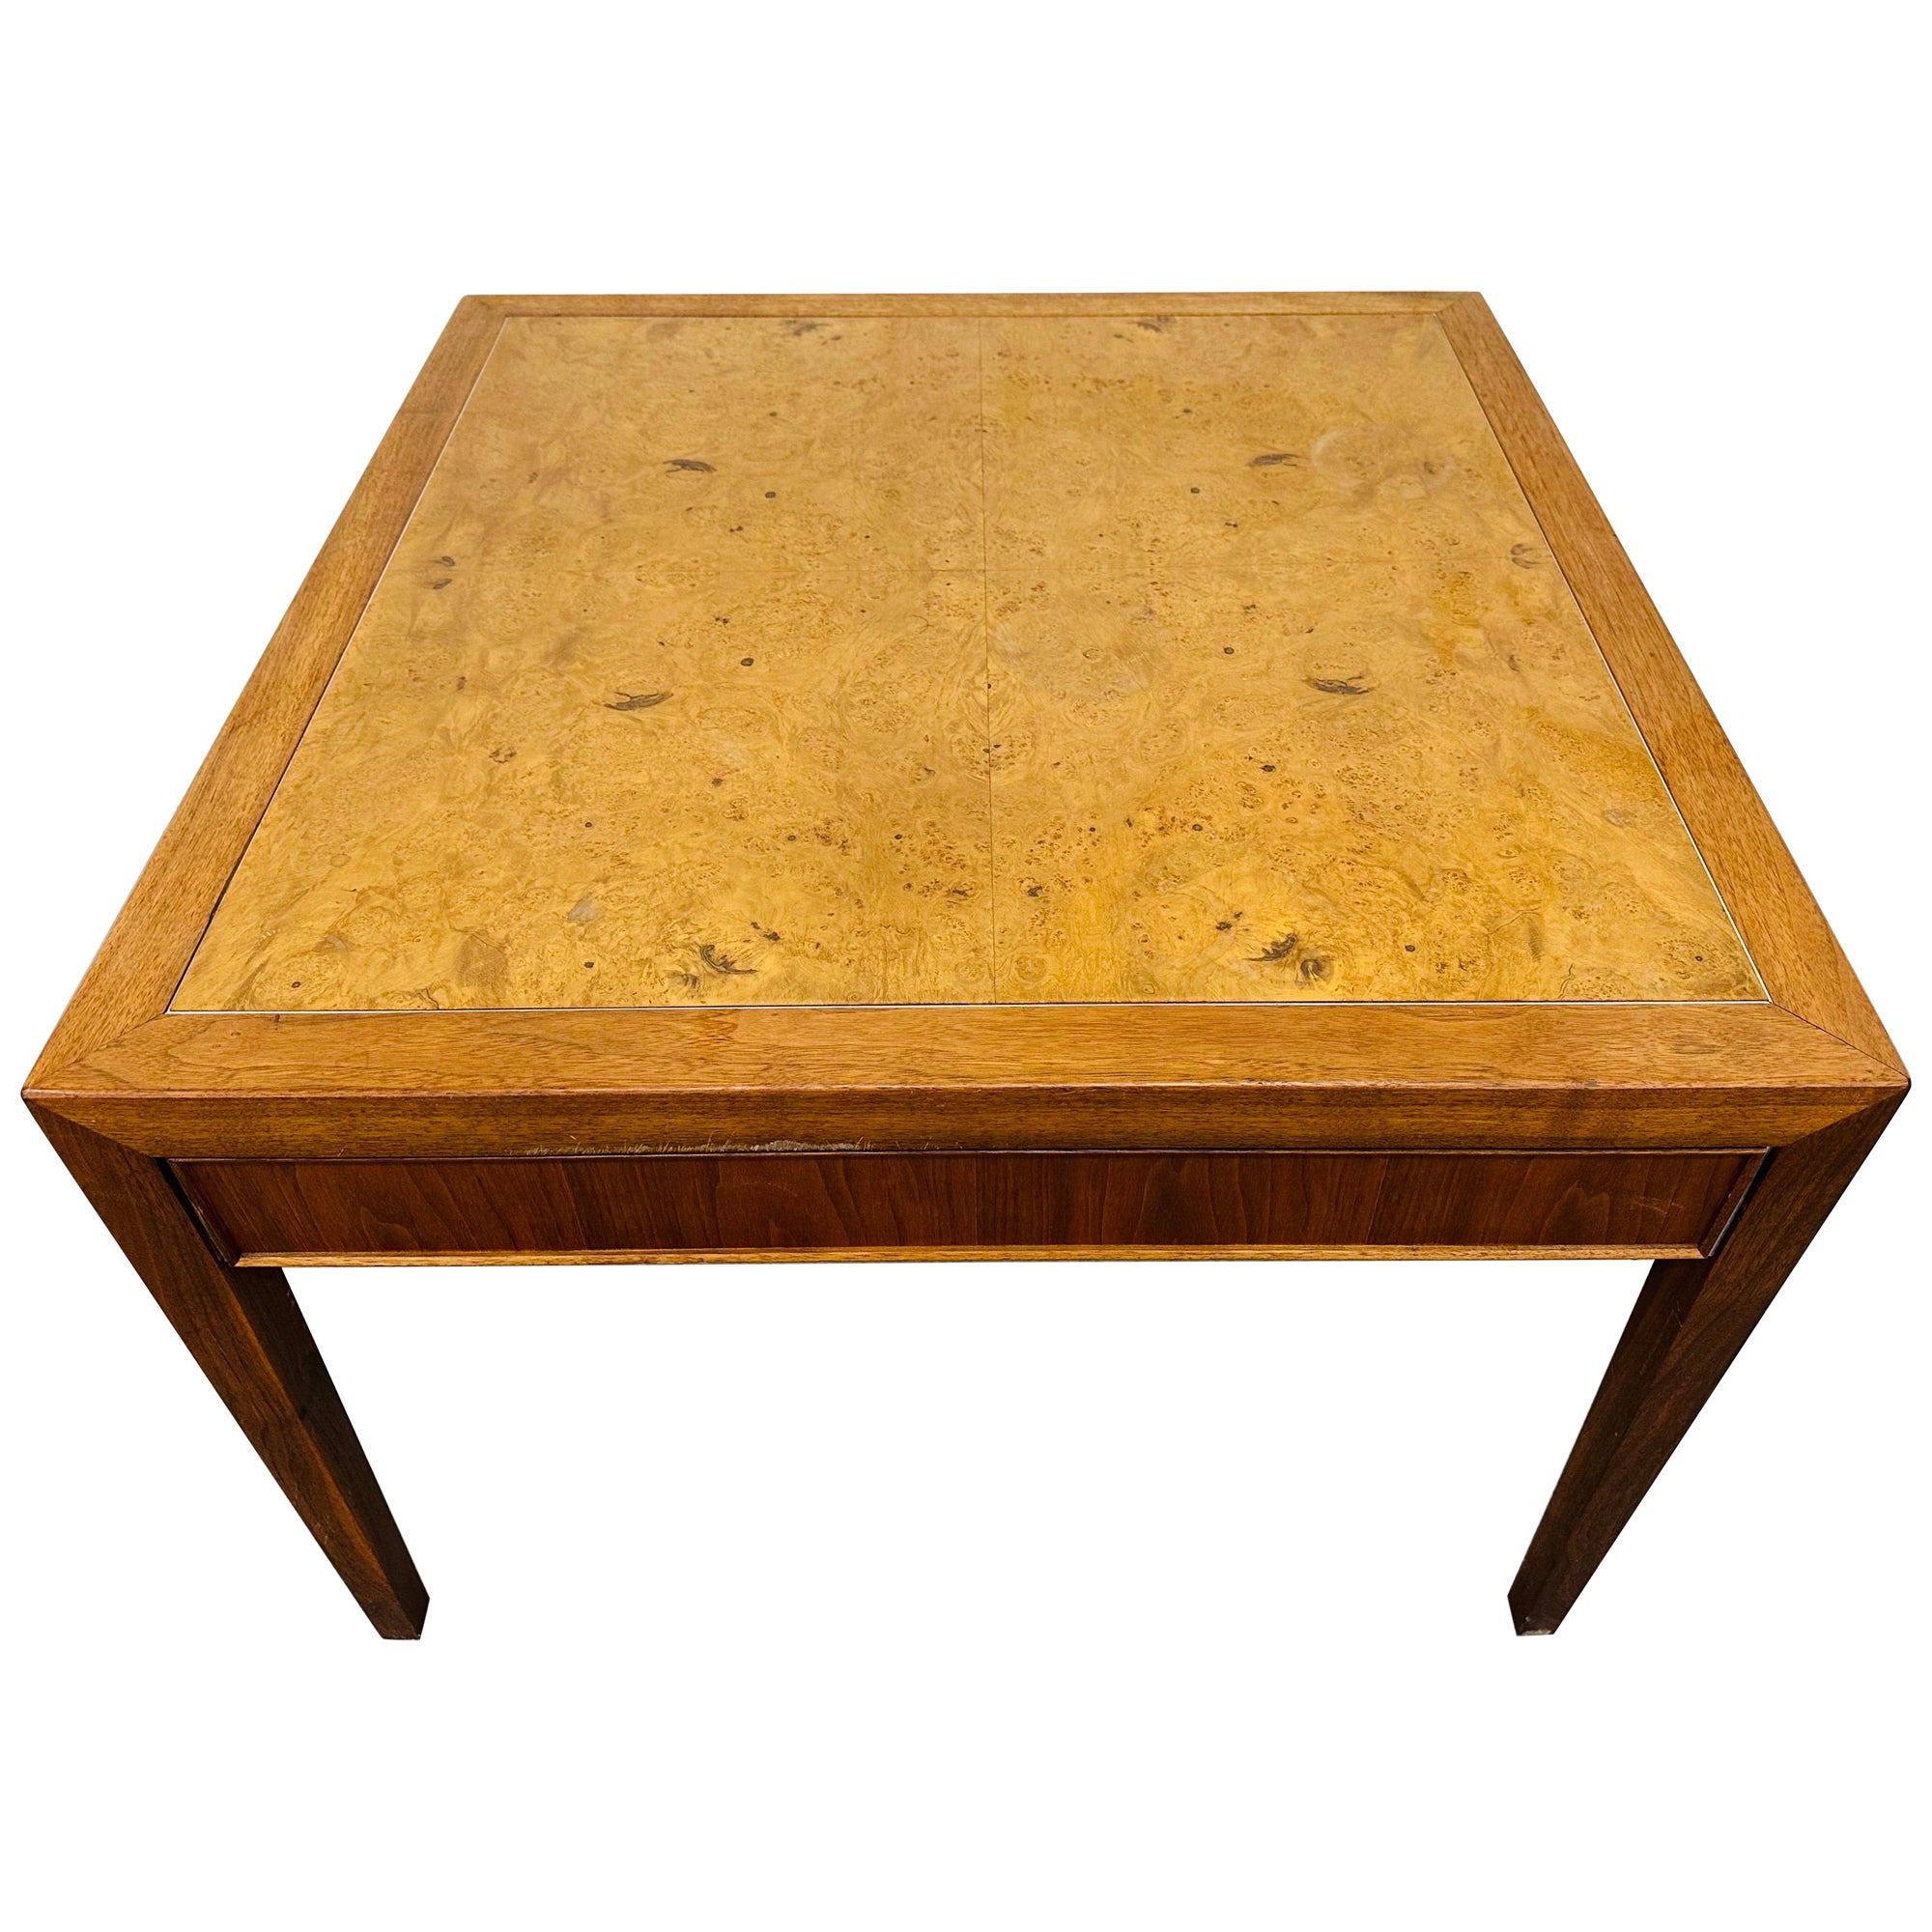 Mid-Century Modern Burled Wood Side Table